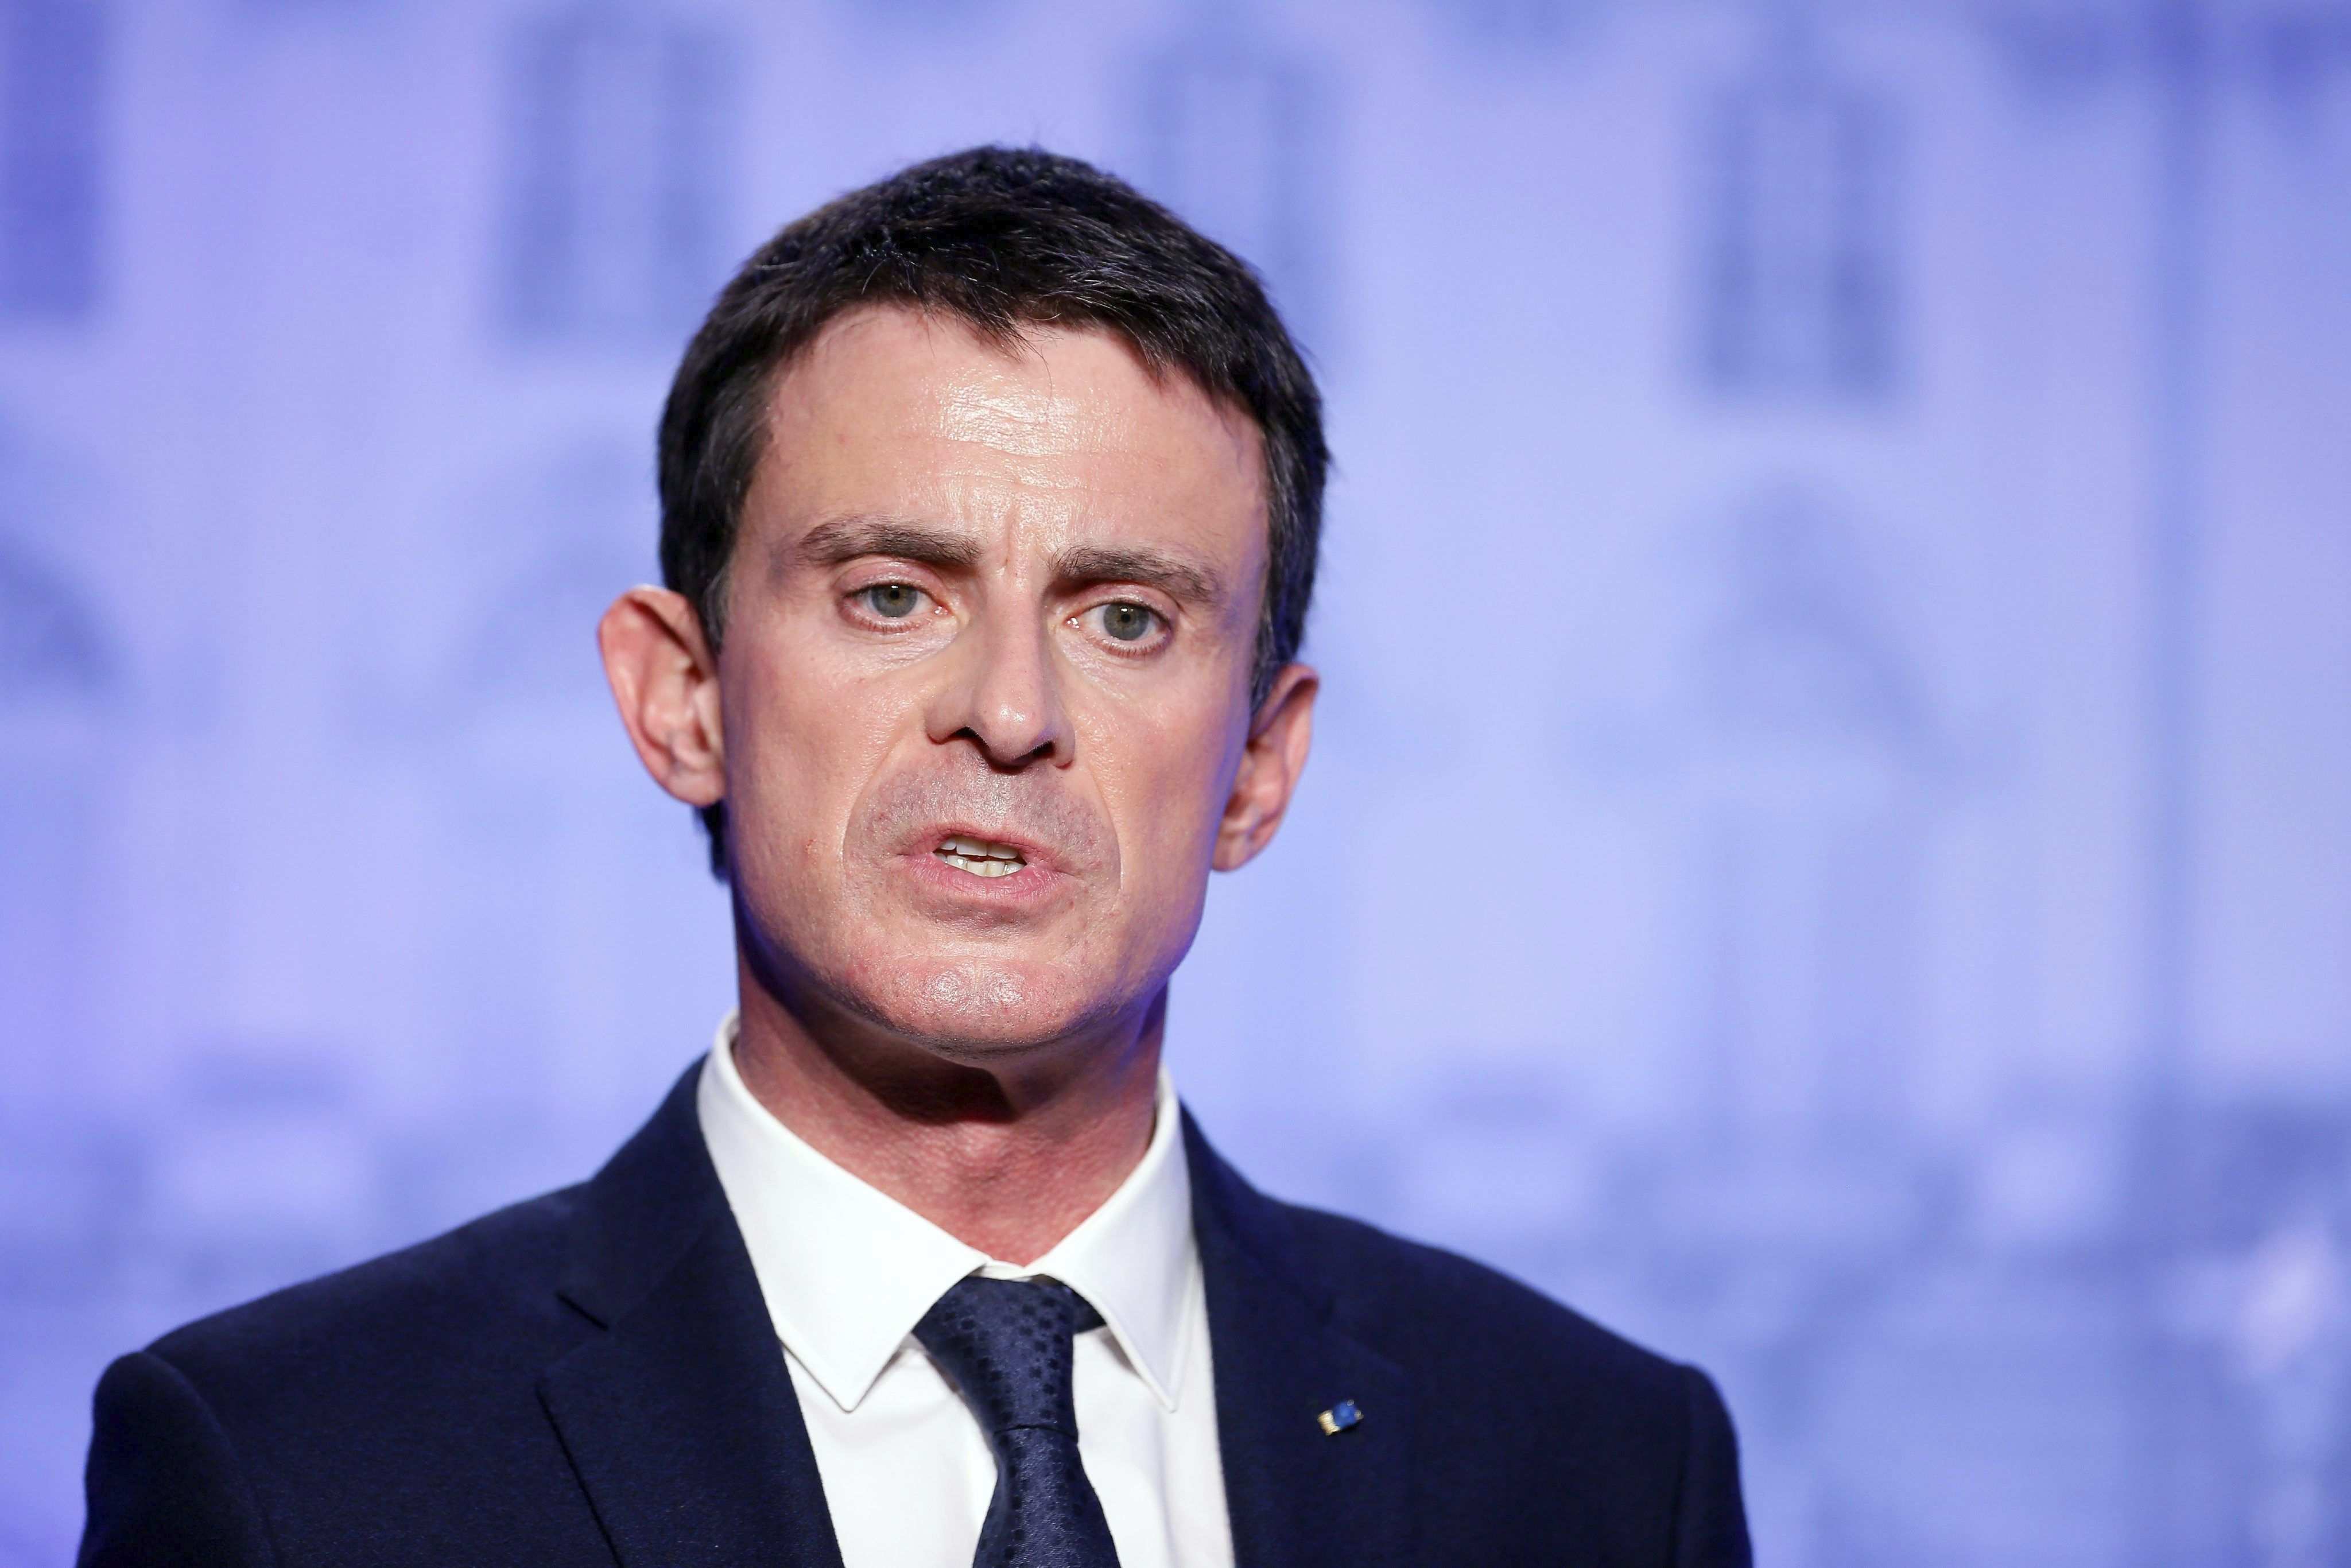 La República en Marxa rebutja Manuel Valls perquè no compleix els "criteris"